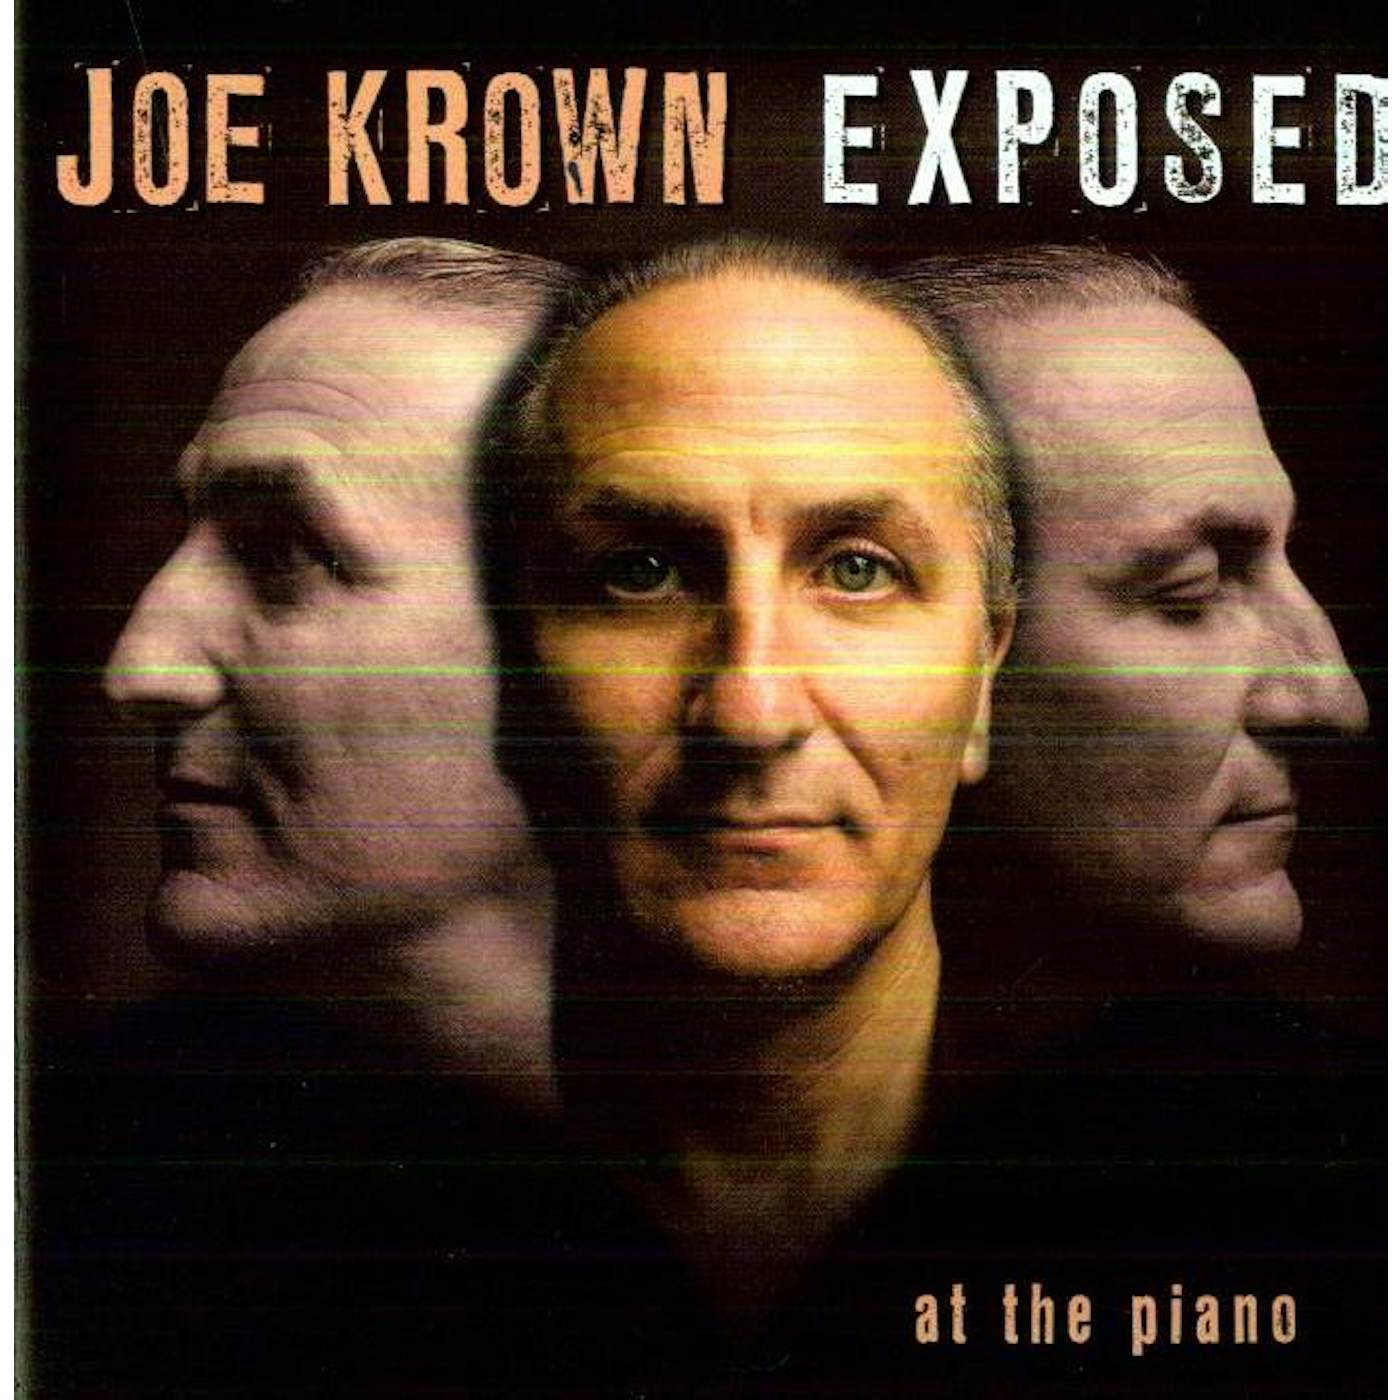 Joe Krown EXPOSED CD